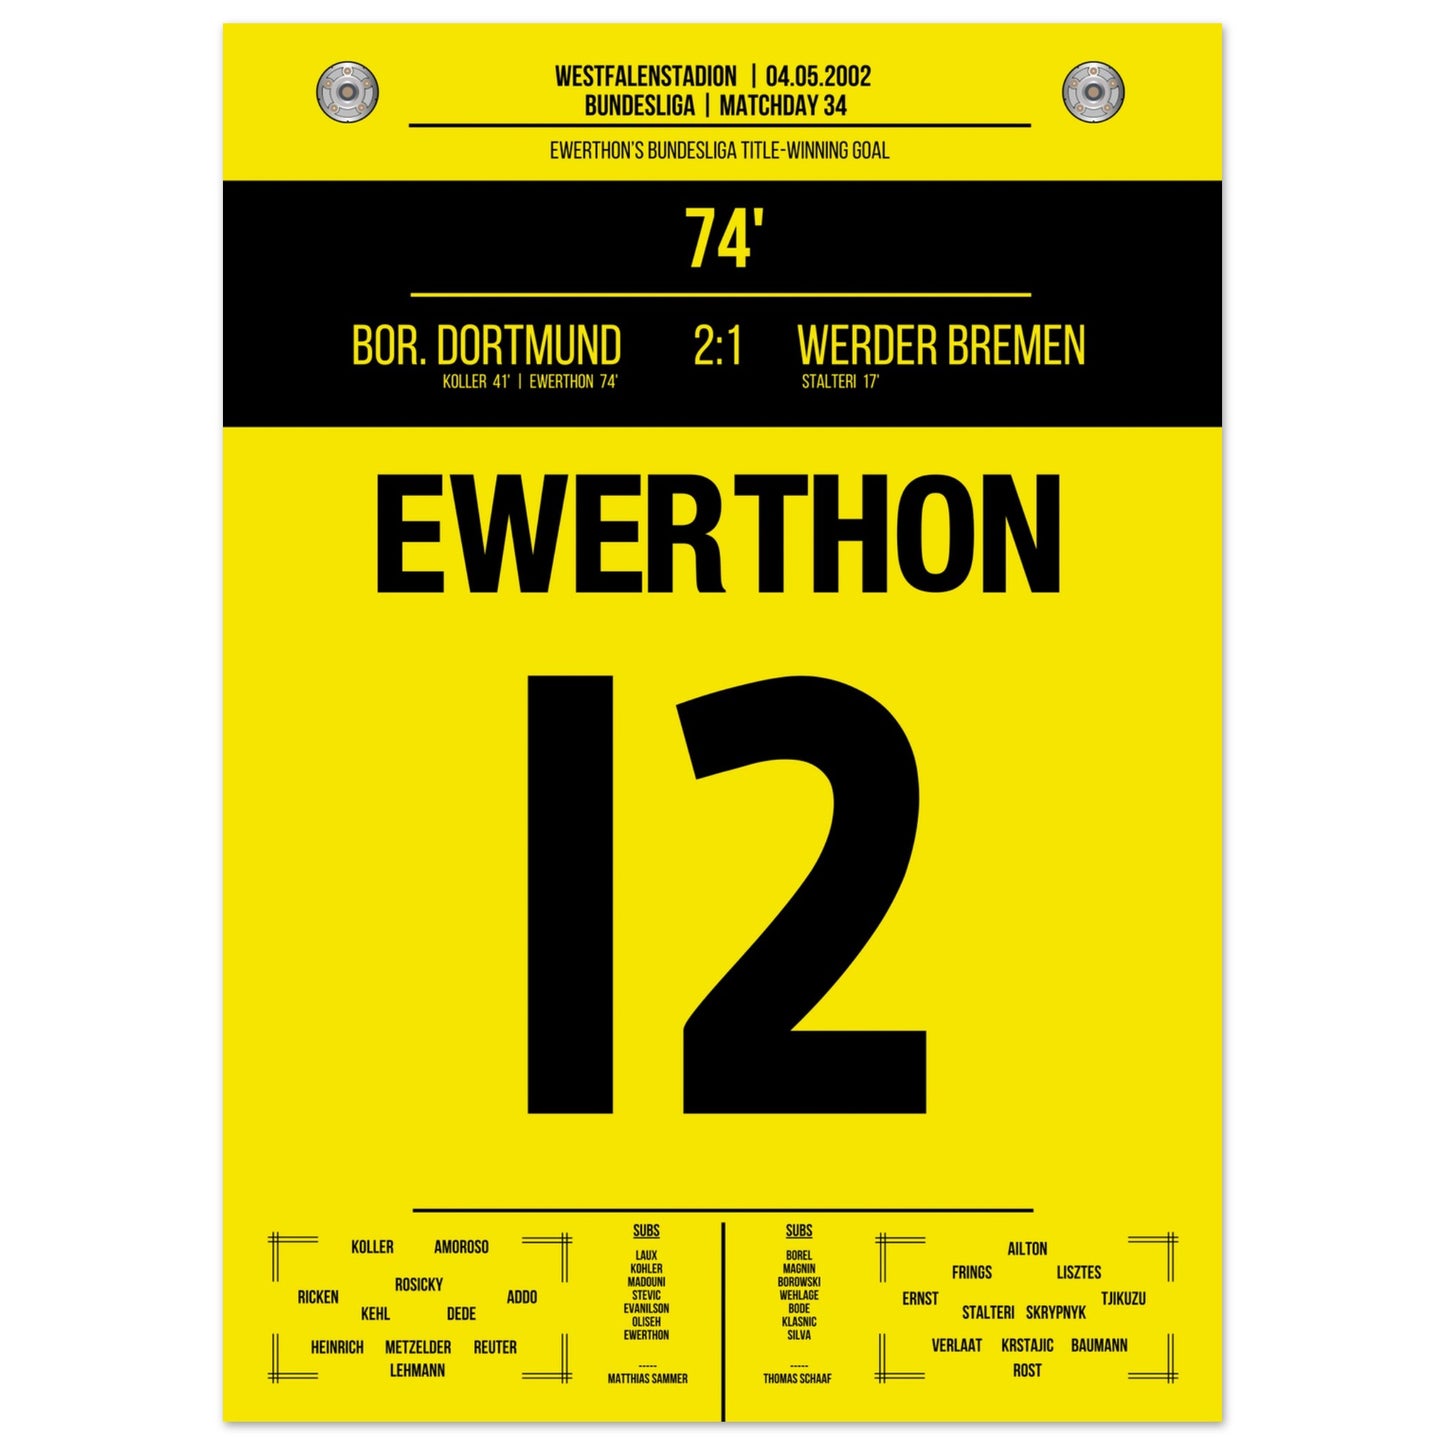 Ewerthon's Tor zu Dortmunds Meisterschaft 2002